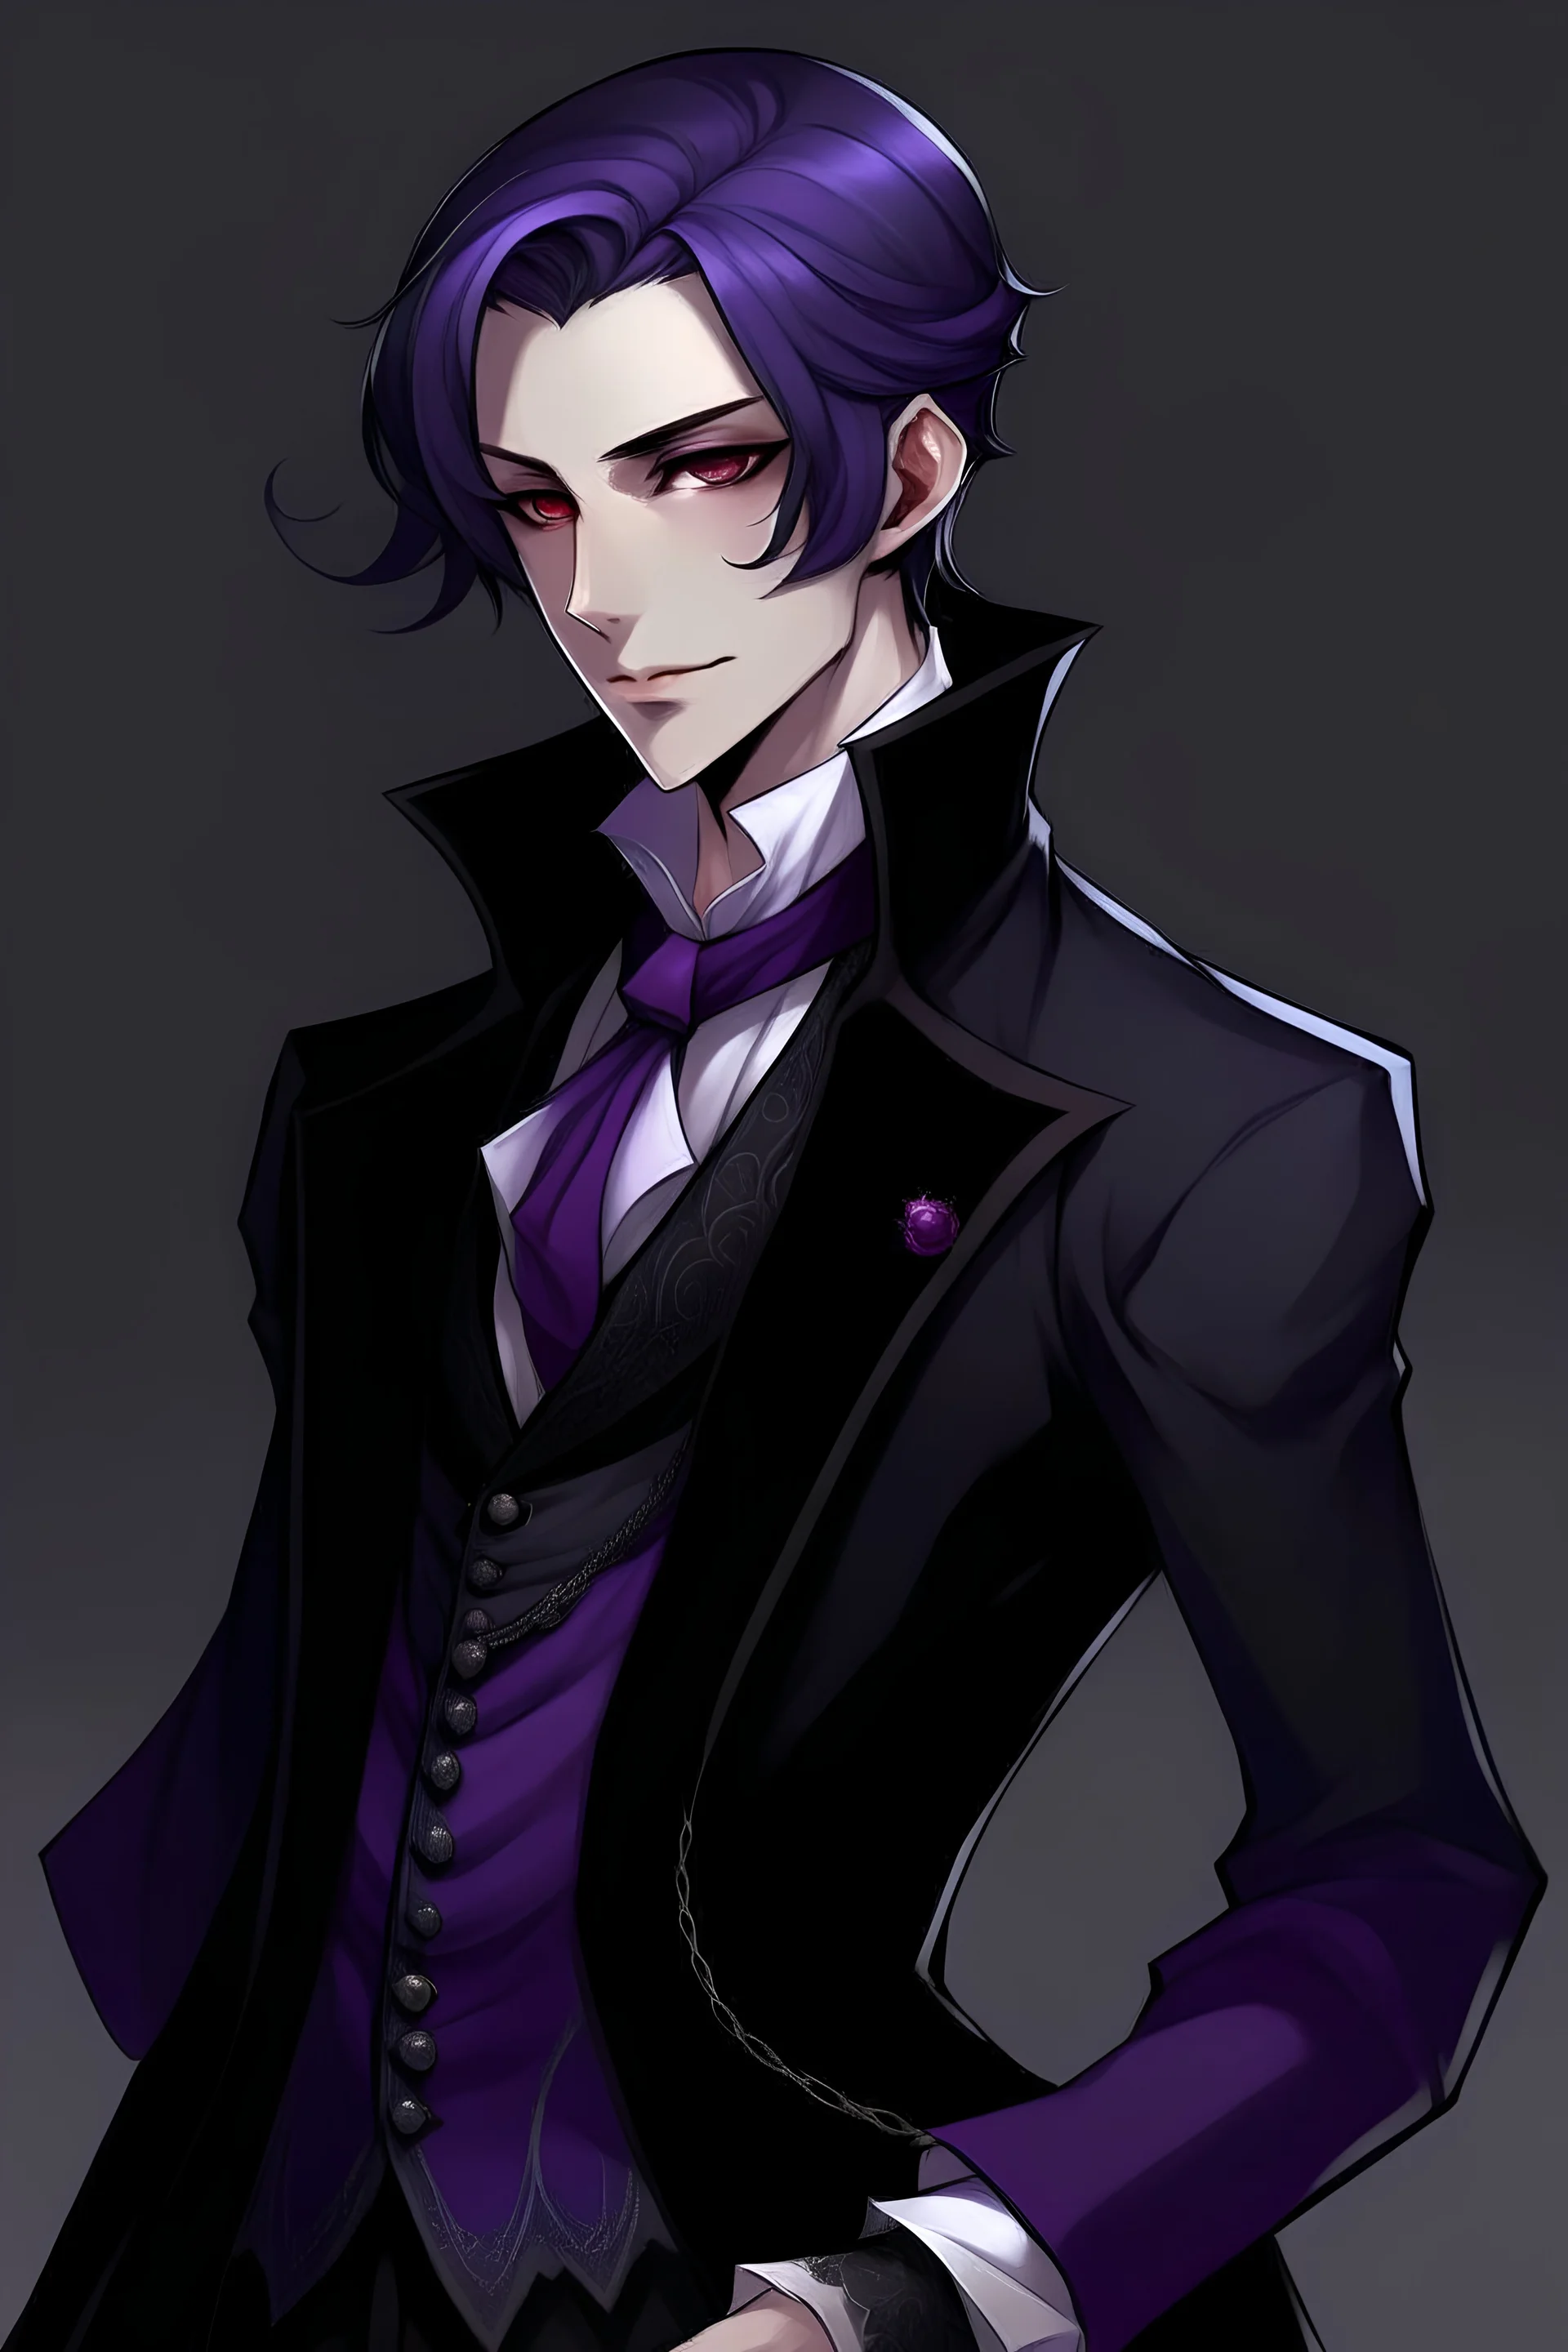 crea un personaje de anime, con pelo violeta oscuro, vestimenta elegante y oscura de la epoca victoriana.